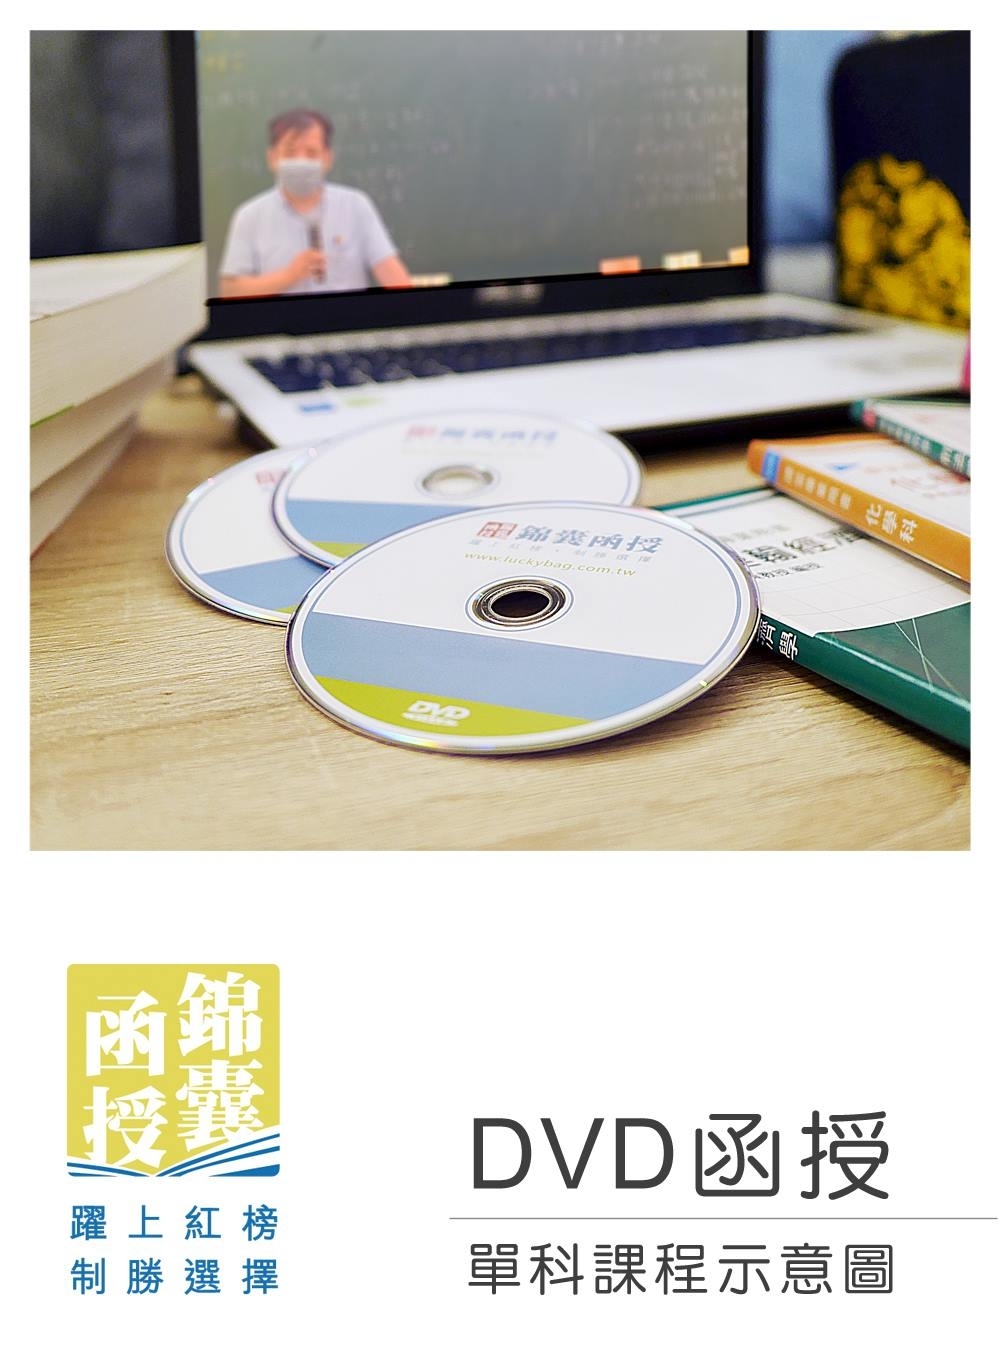 【DVD函授】郵政法暨交通安全...